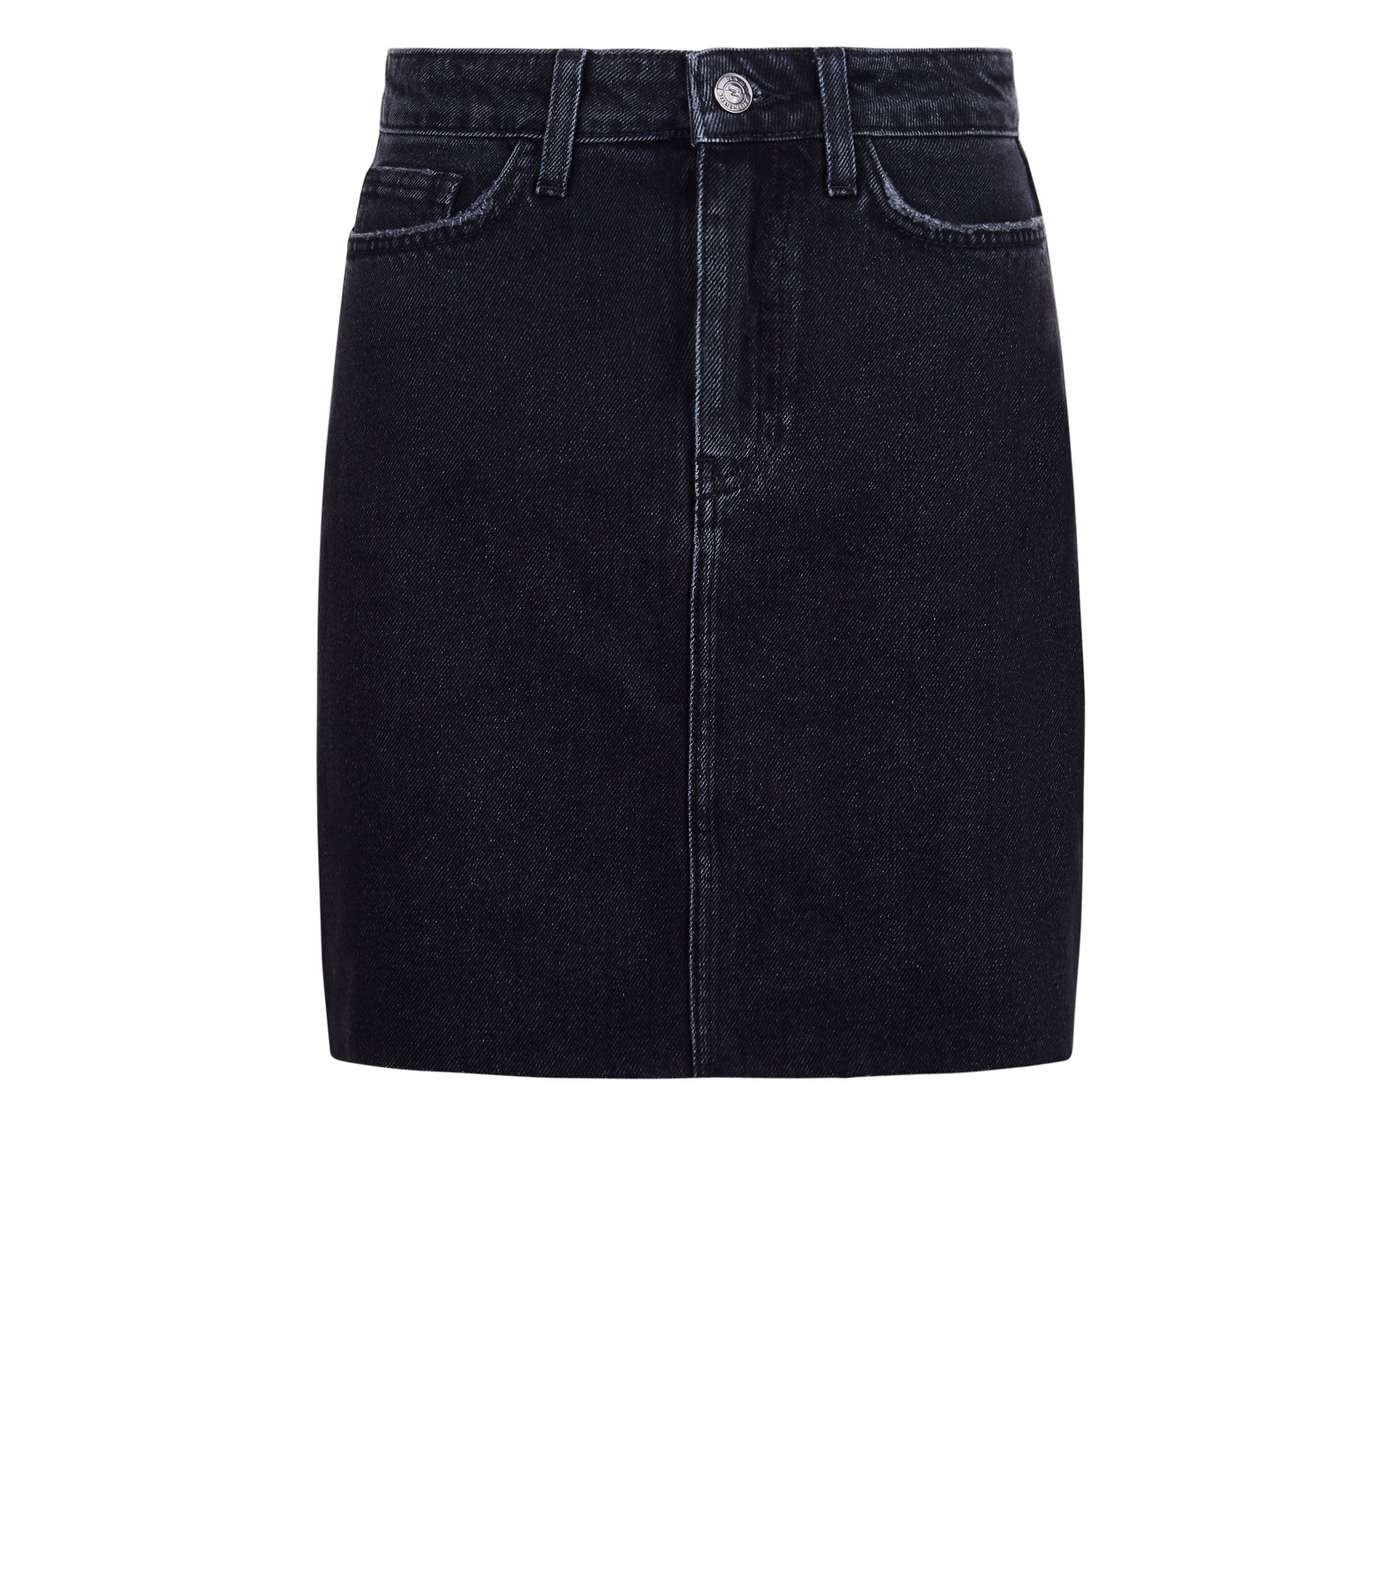 Petite Black Frayed Hem Denim Skirt Image 4